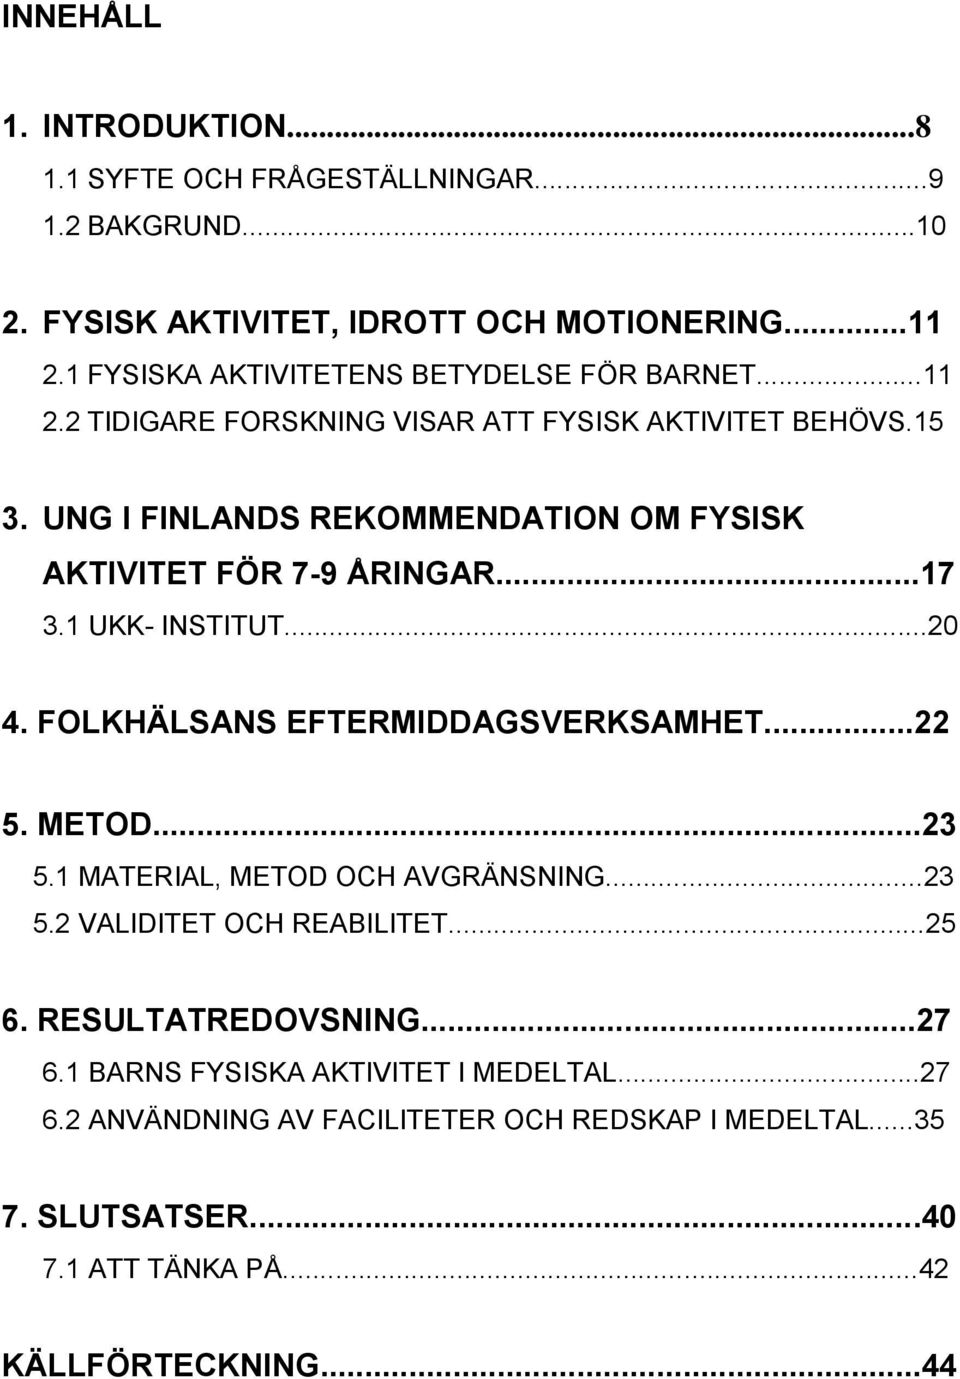 UNG I FINLANDS REKOMMENDATION OM FYSISK AKTIVITET FÖR 7-9 ÅRINGAR...17 3.1 UKK- INSTITUT...20 4. FOLKHÄLSANS EFTERMIDDAGSVERKSAMHET...22 5. METOD...23 5.